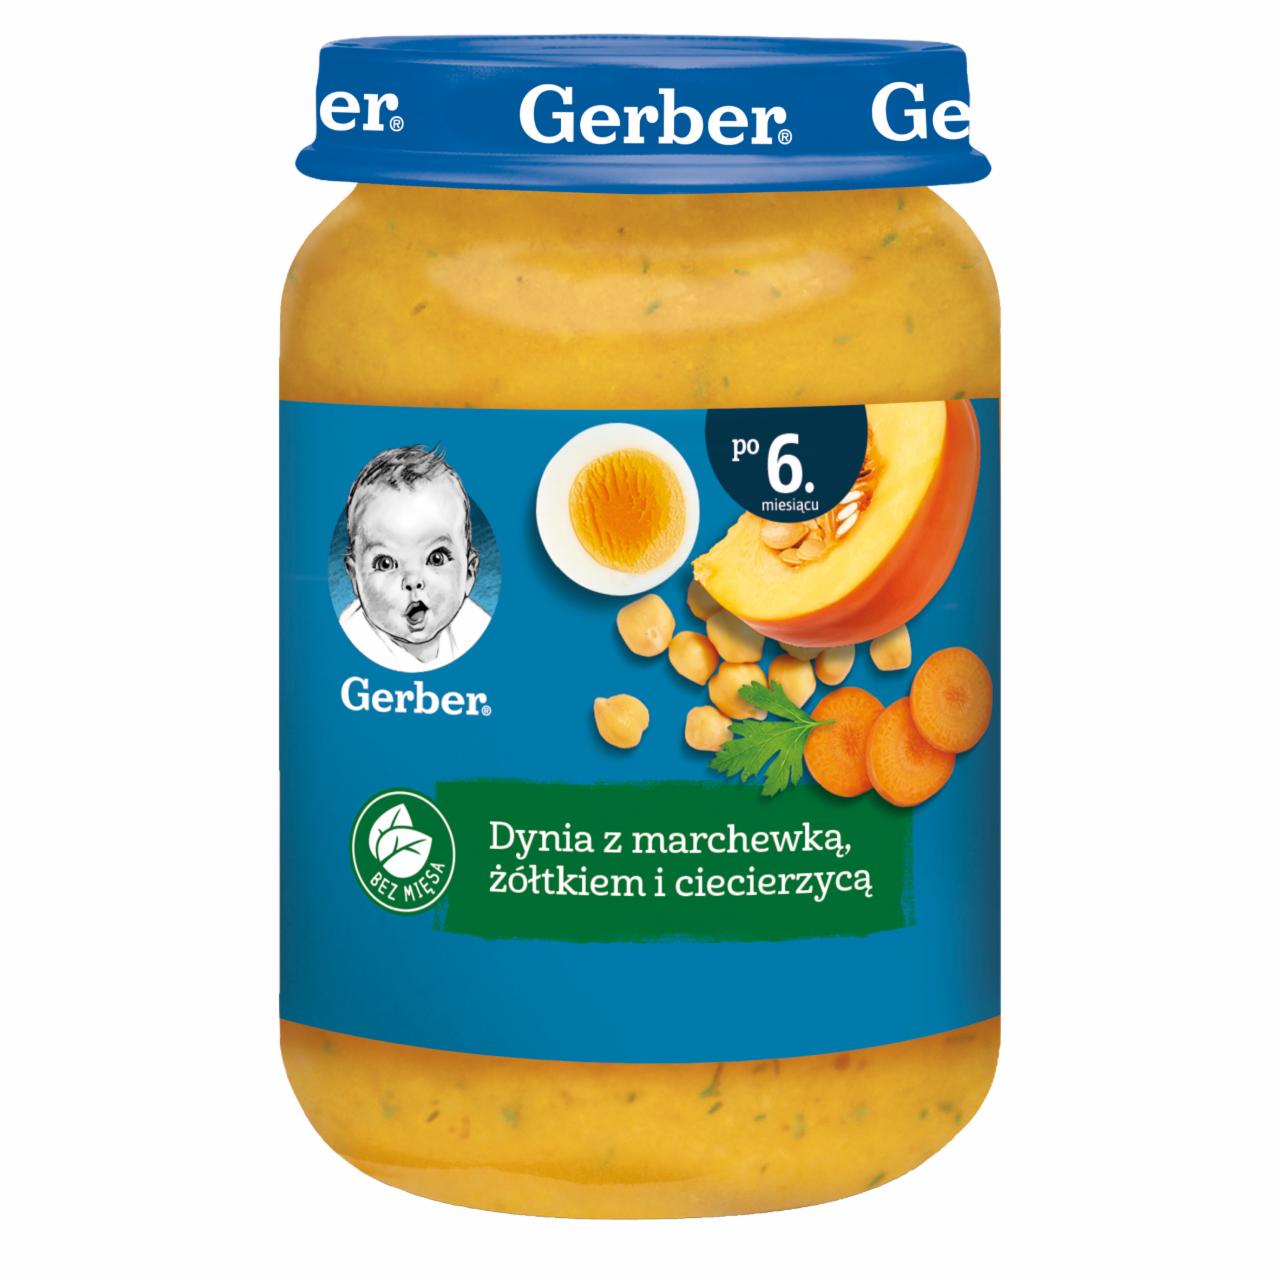 Zdjęcia - Gerber Dynia z marchewką żółtkiem i ciecierzycą dla niemowląt po 6. miesiącu 190 g